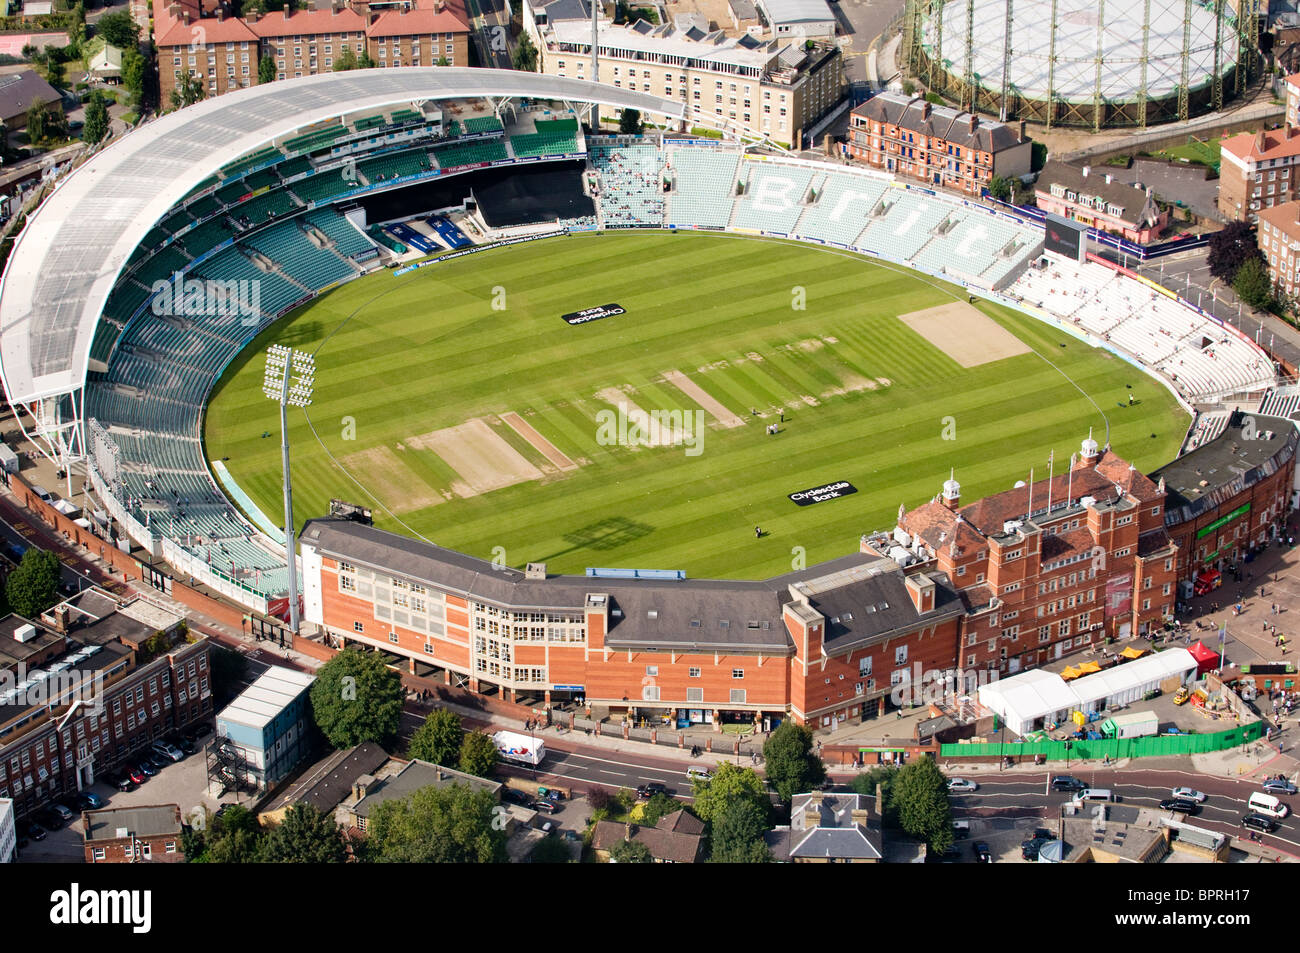 Vue aérienne de l'Oval Cricket Ground, à Kennington, Londres, Angleterre. C'est un lieu de cricket du comté et international. Banque D'Images